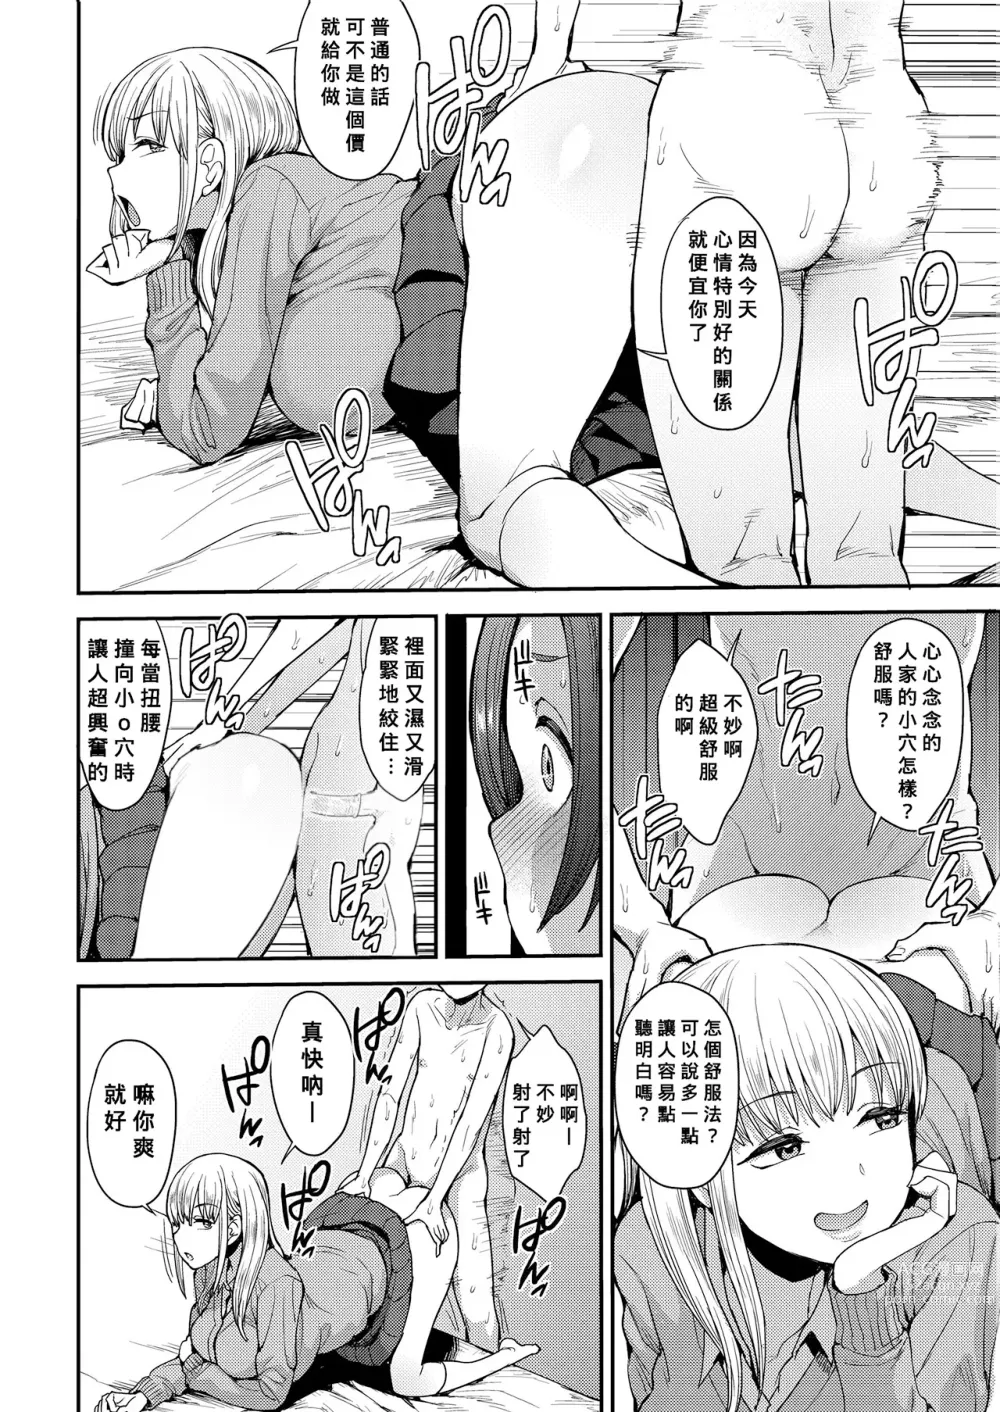 Page 14 of manga こっちむいてよ